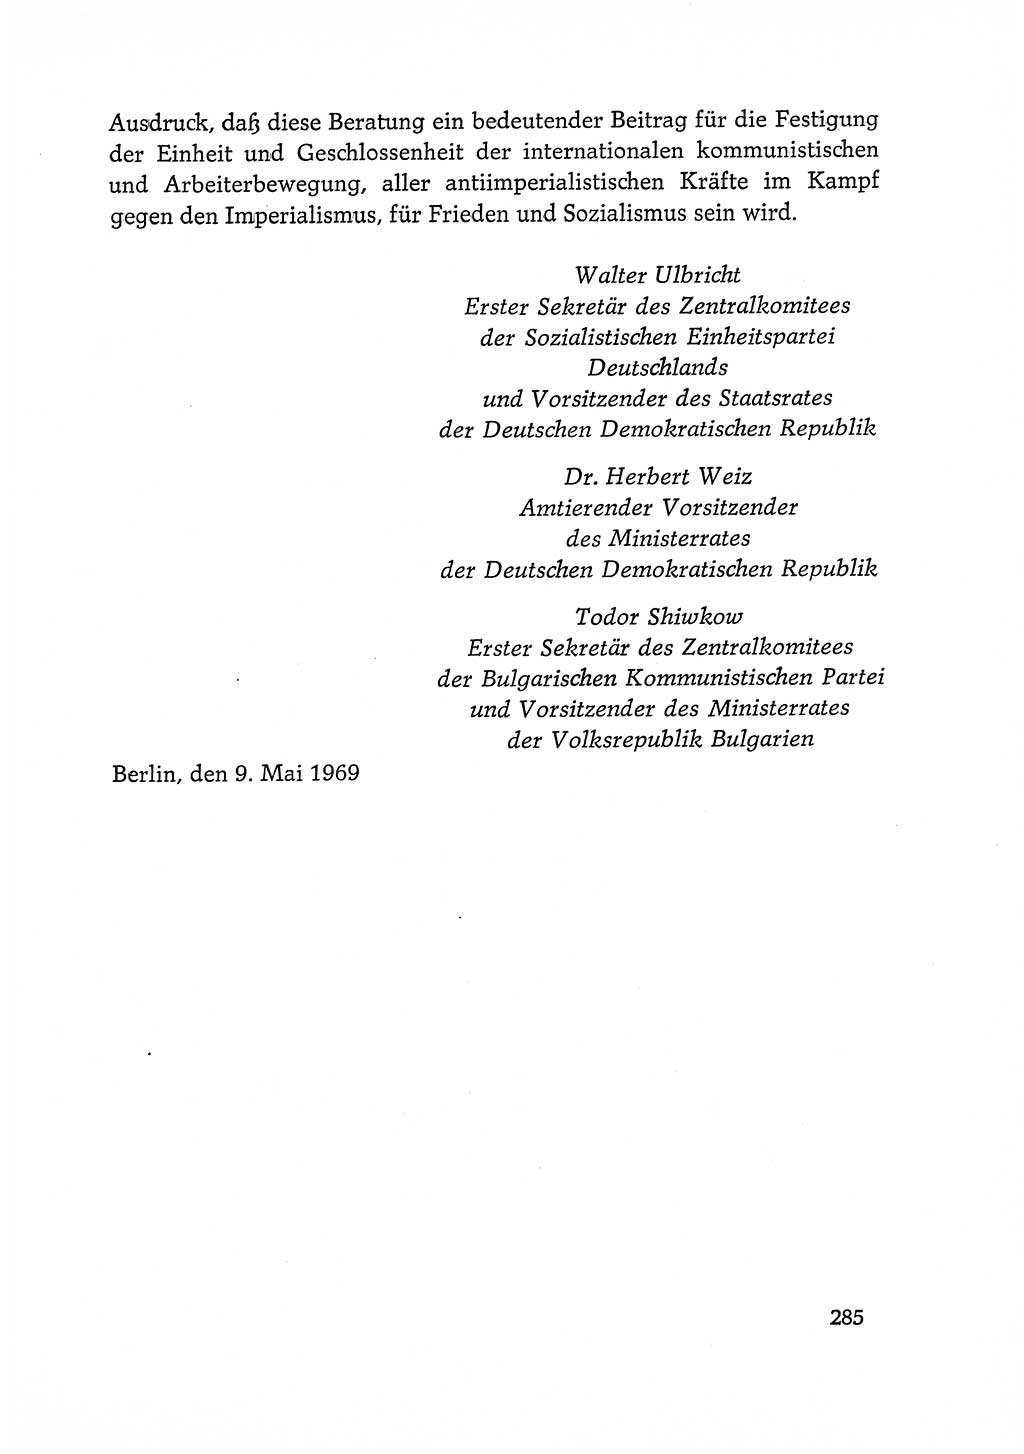 Dokumente der Sozialistischen Einheitspartei Deutschlands (SED) [Deutsche Demokratische Republik (DDR)] 1968-1969, Seite 285 (Dok. SED DDR 1968-1969, S. 285)